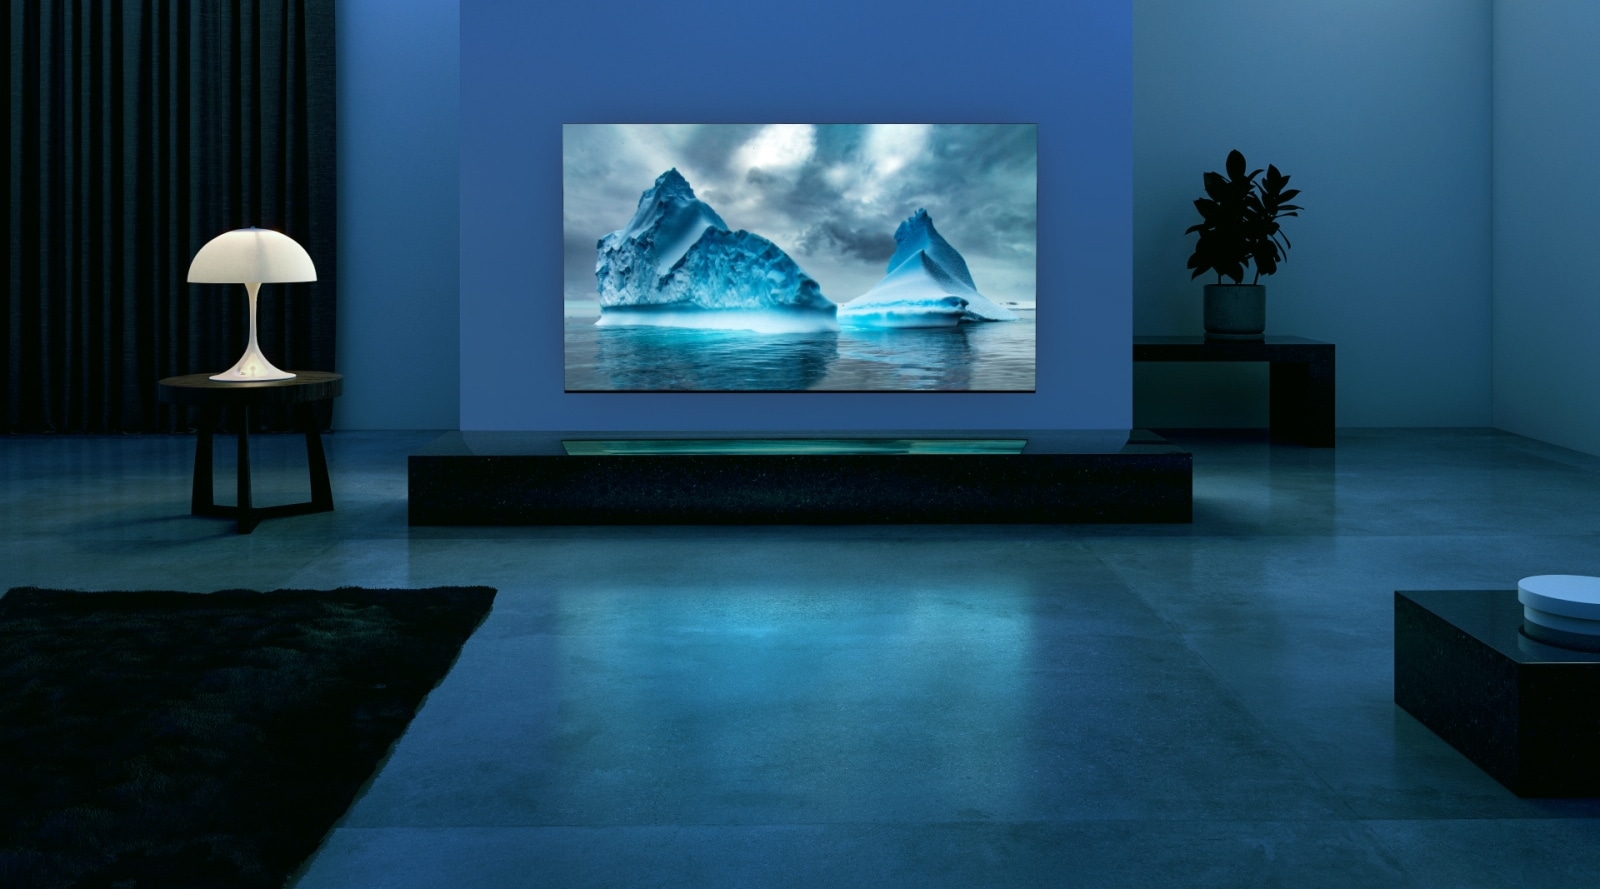 Modrý neónový kruh sa pohybuje na obrázku modrého ľadovca. Kamera oddiali zobrazenie a ukáže tento modrý ľadovec na obrazovke televízora. Televízor sa nachádza v širokej obývačke s modrým pozadím. 